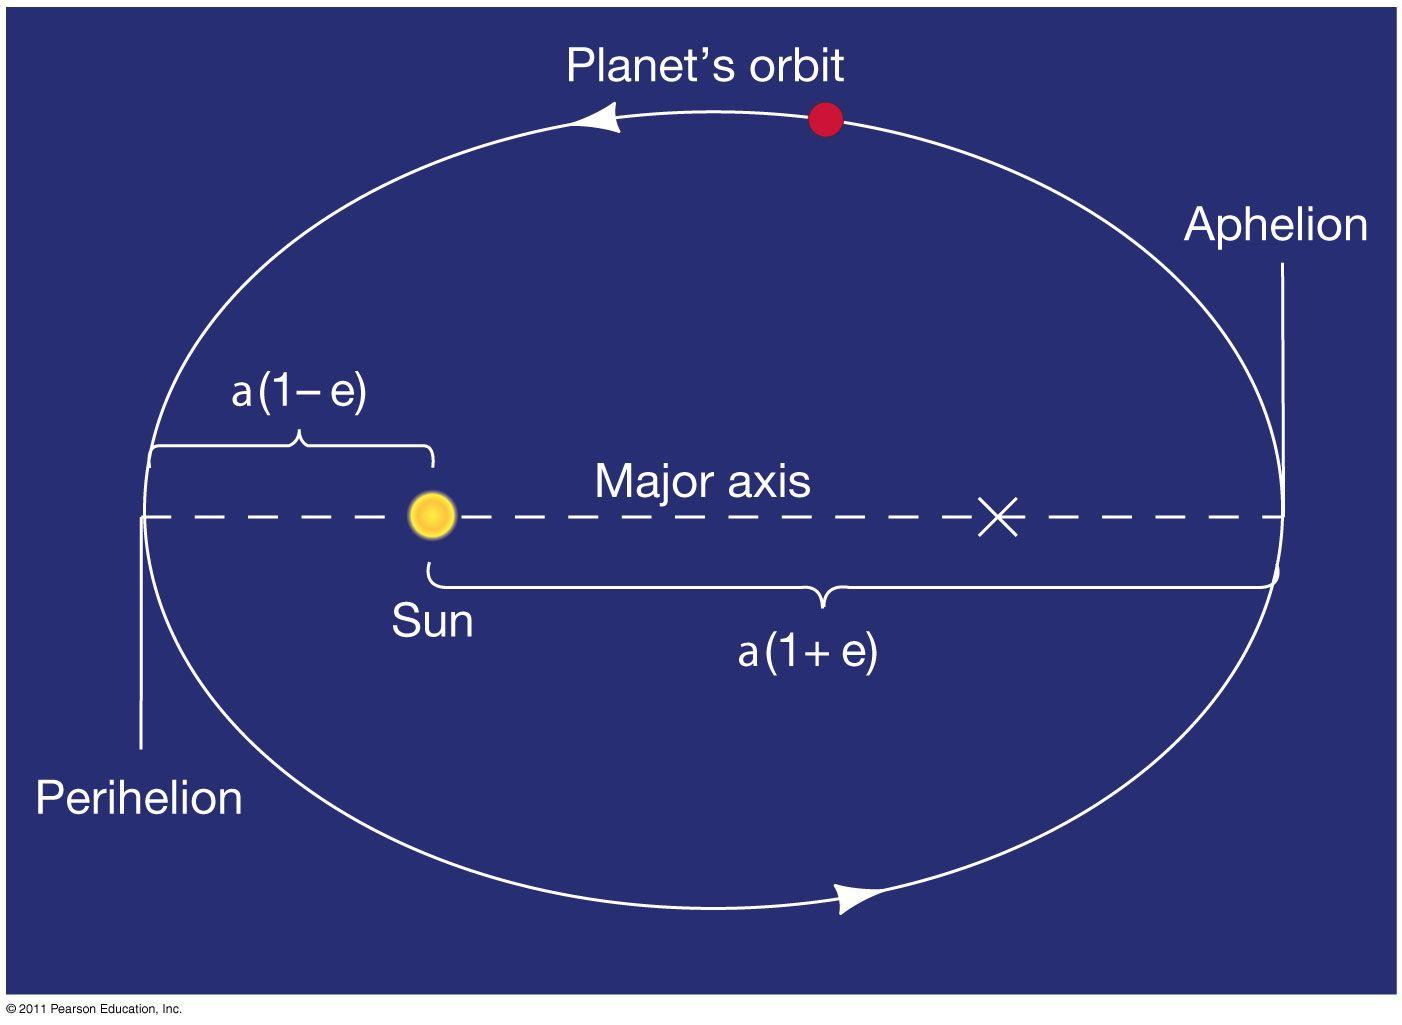 Orbit Shape Logo - newtonian gravity planet orbits are in the shape of an ellipse